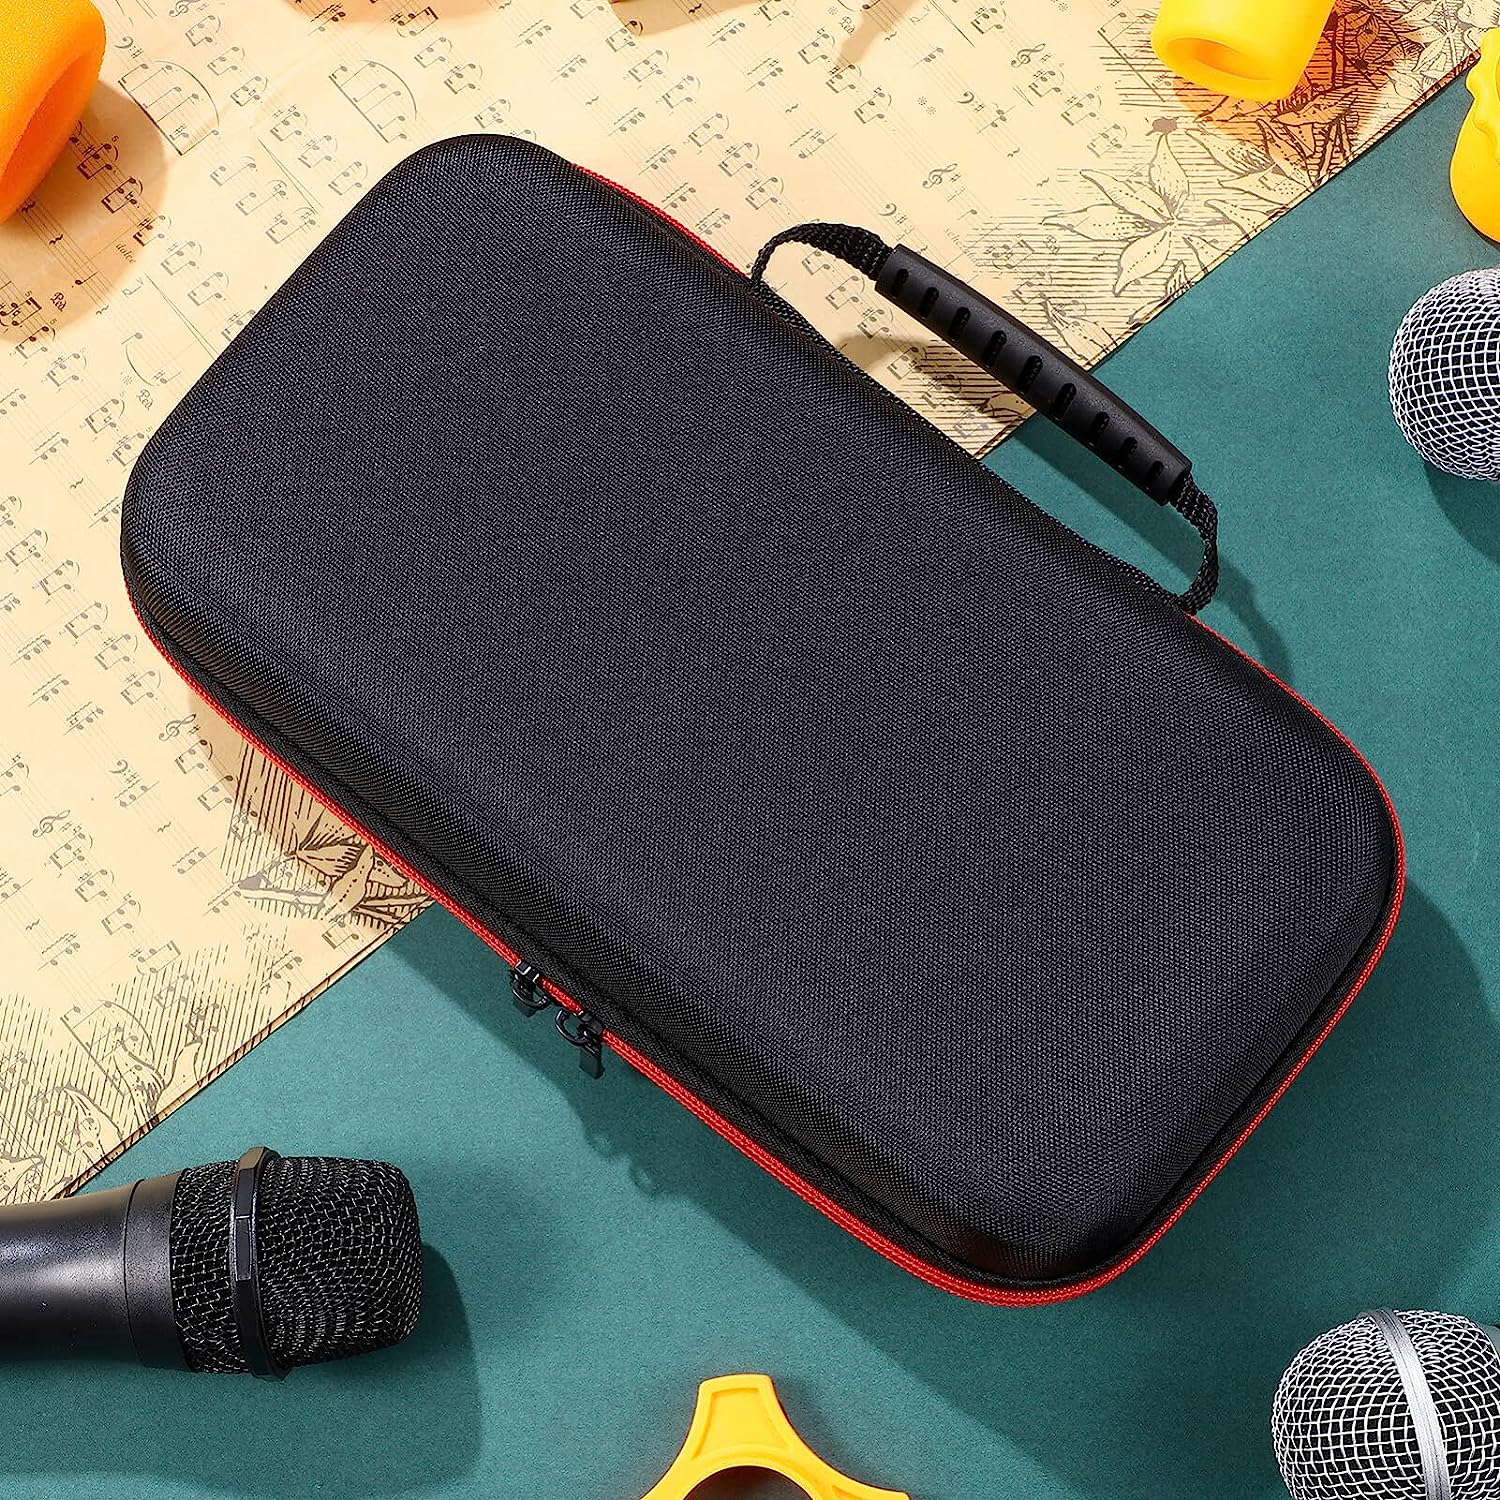 Ciieeo Wireless Microphone Case Mic Storage Tracing Bag for 2 Handheld Microphones Կոշտ EVA պատյան՝ կայծակաճարմանդով բացօթյա ճանապարհորդության համար